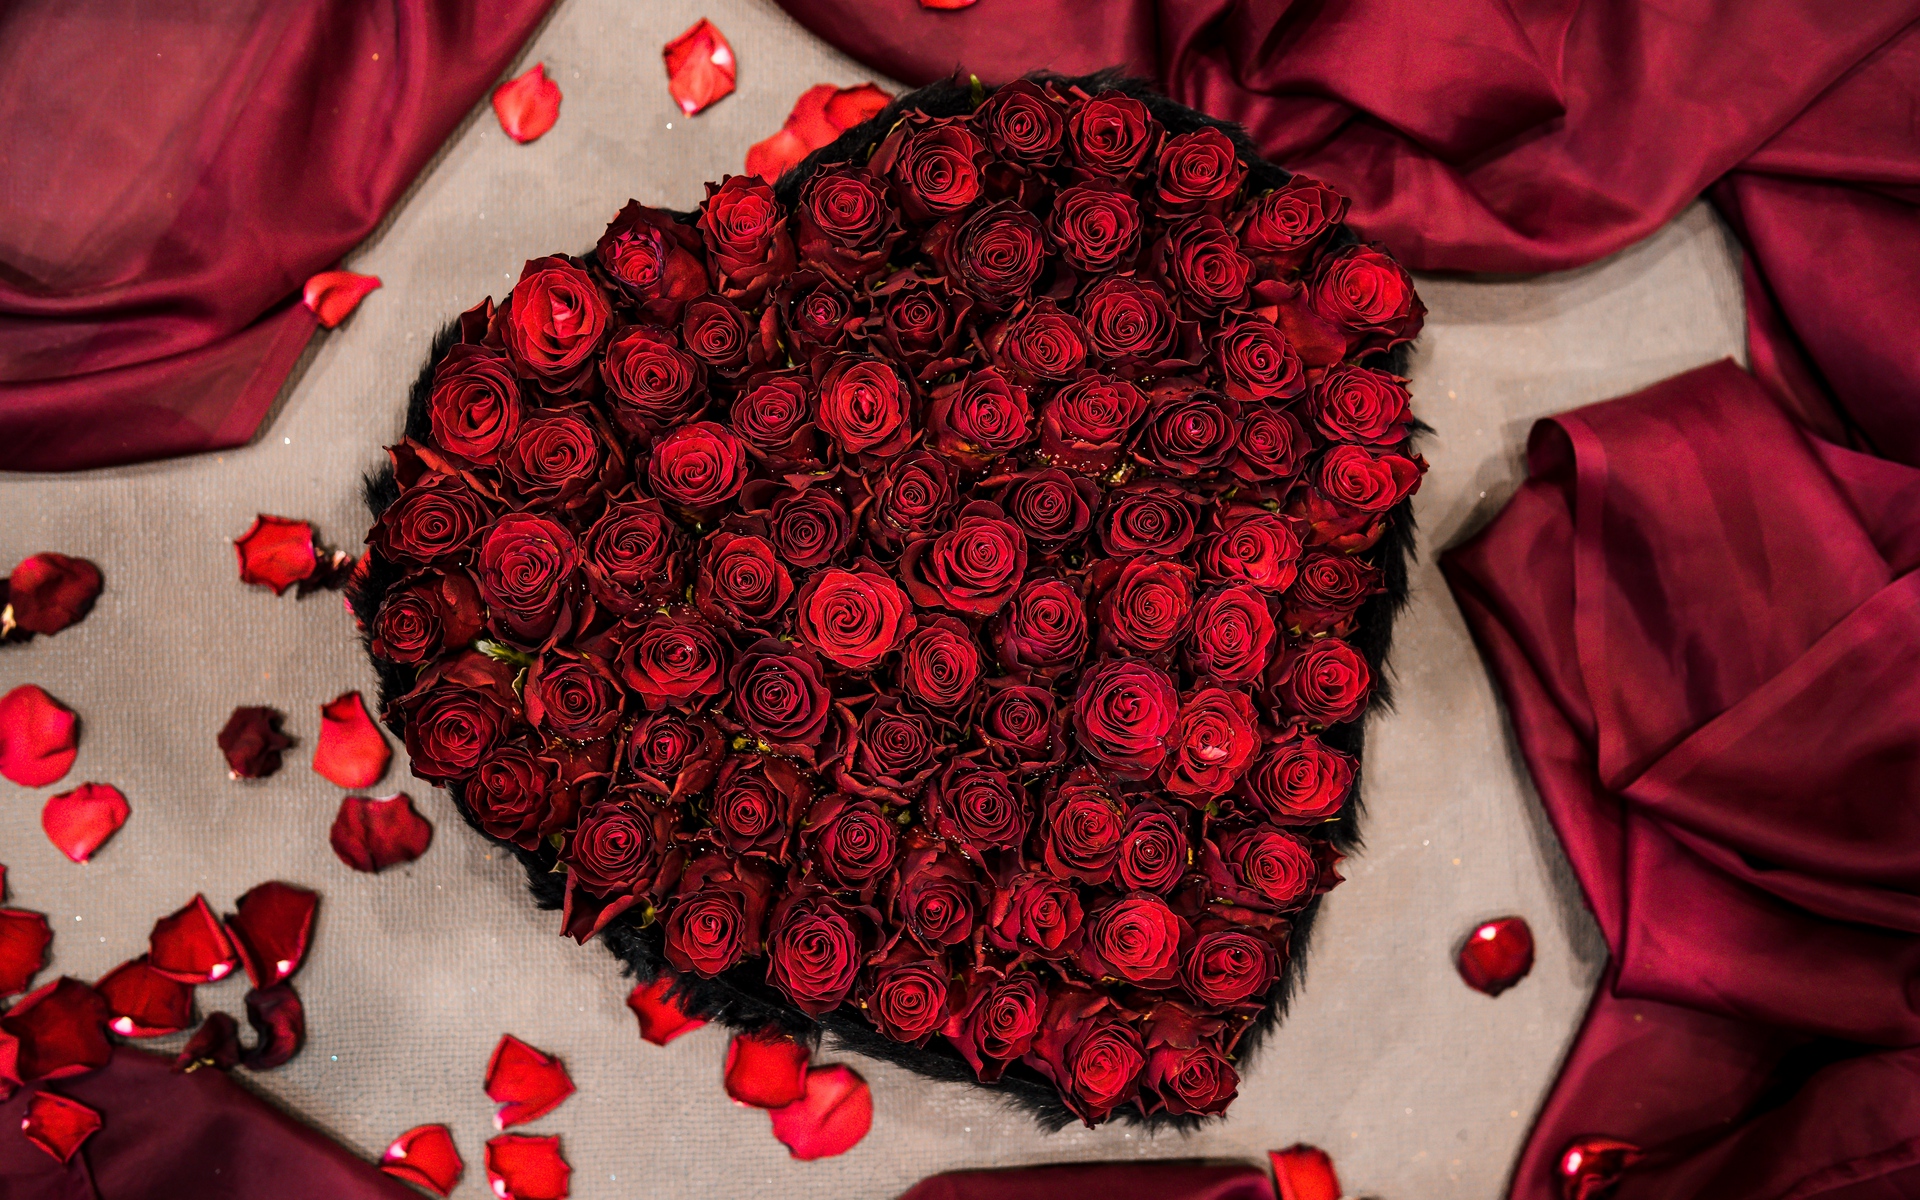 sapna 이름 사랑 벽지,빨간,발렌타인 데이,장미,꽃잎,정원 장미